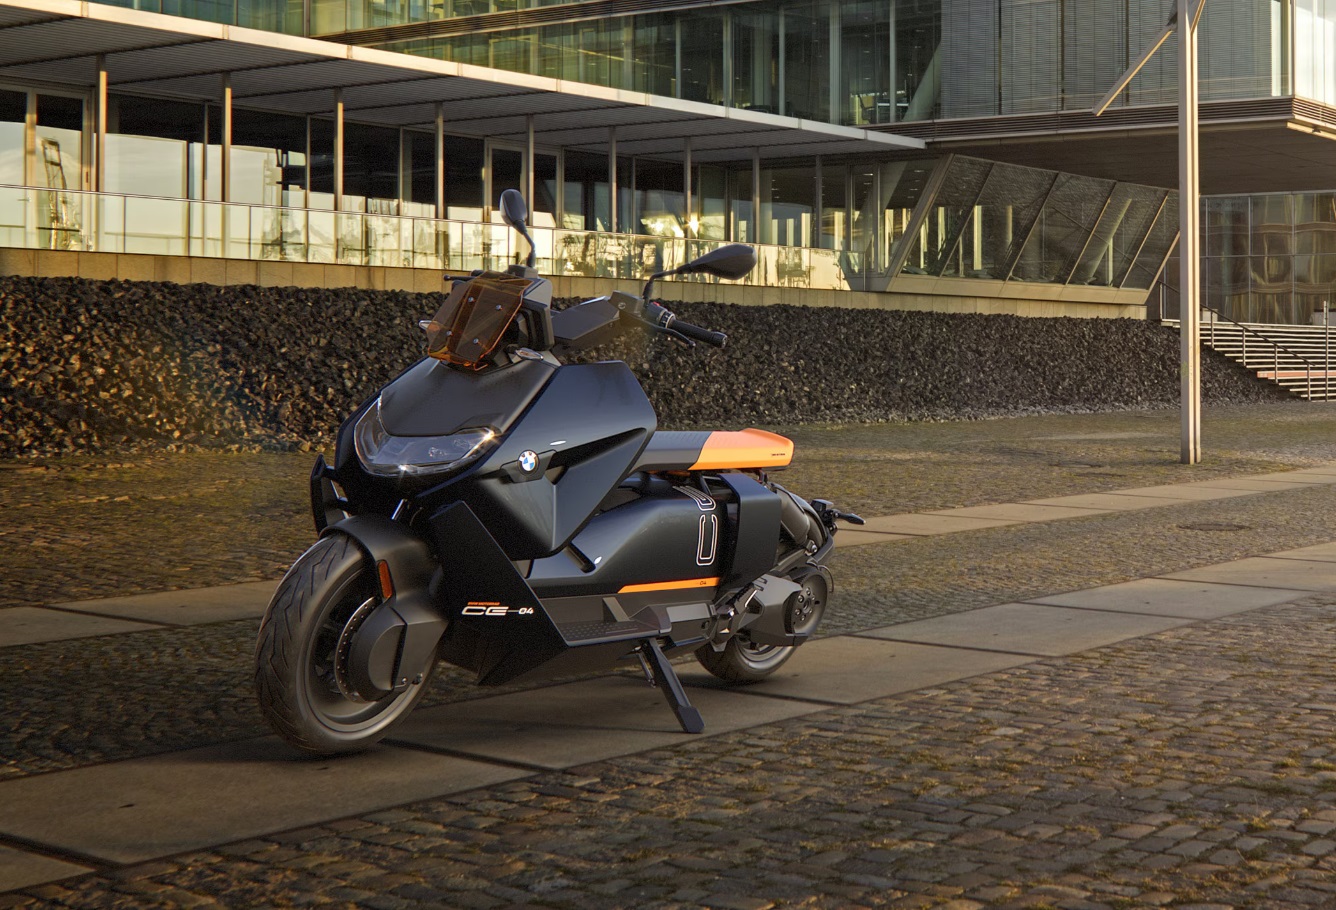 BMW sem planos para produzir nos próximos ‘dois ou três anos’ motos elétricas mais potentes